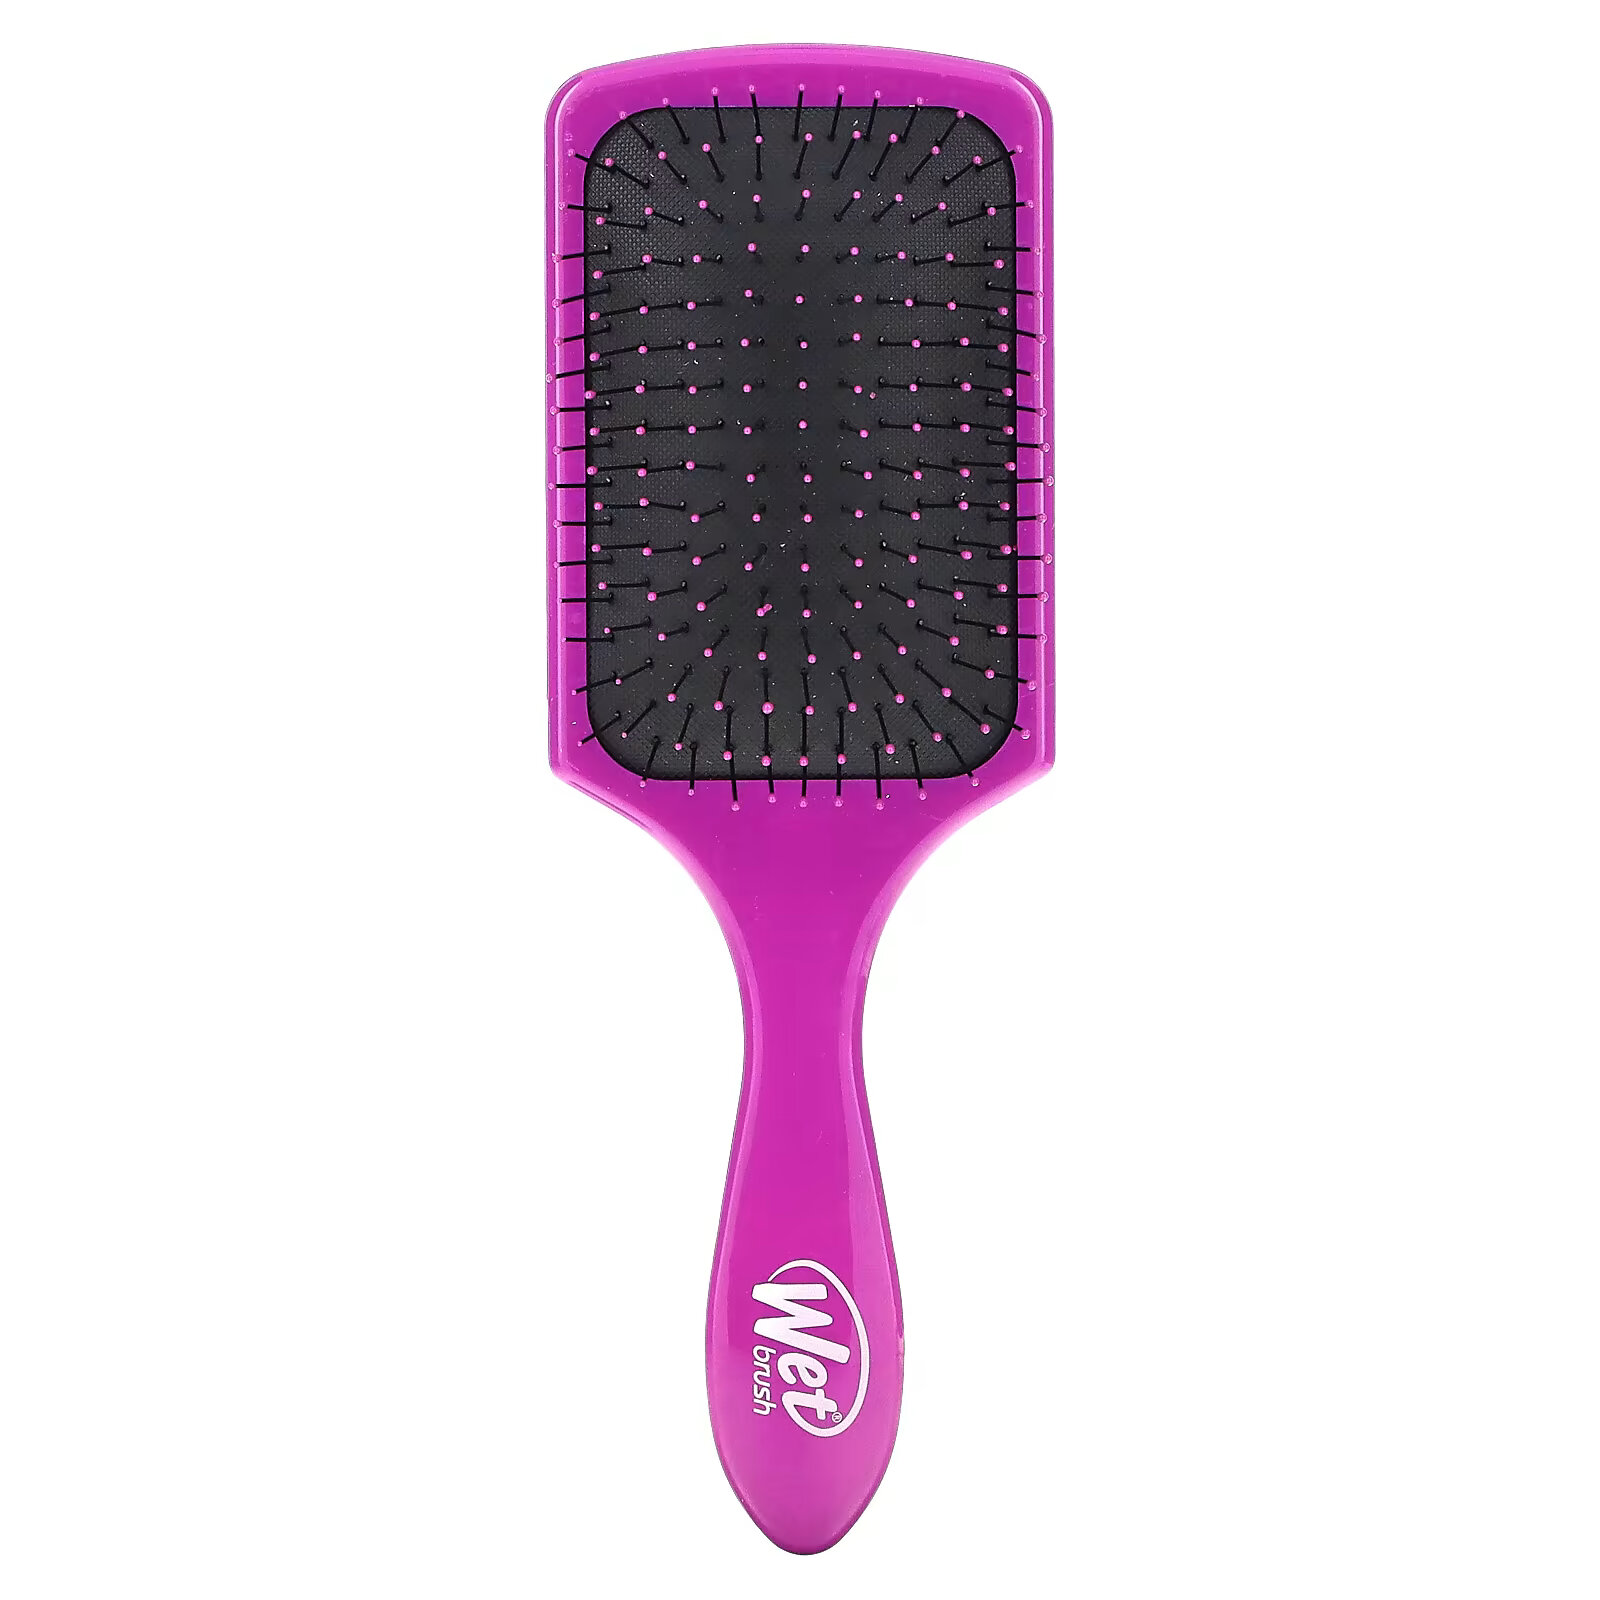 Wet Brush, Paddle Detangler Brush, щетка для легкого расчесывания, пурпурный, 1 шт. wet brush paddle detangler refresh extend 1 кисть